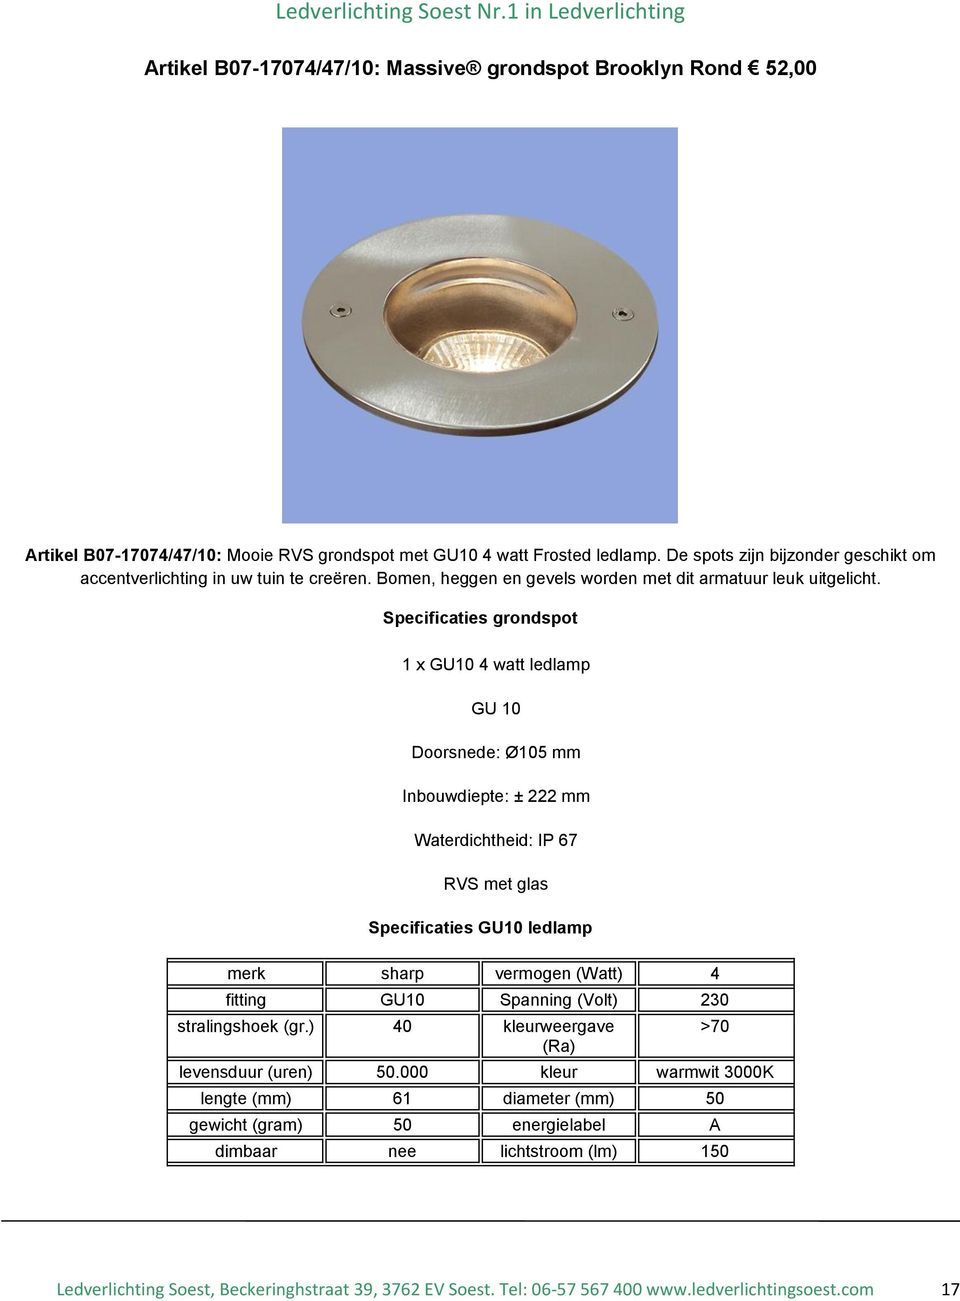 Specificaties grondspot 1 x GU10 4 watt ledlamp GU 10 Doorsnede: Ø105 mm Inbouwdiepte: ± 222 mm Waterdichtheid: IP 67 RVS met glas Specificaties GU10 ledlamp merk sharp vermogen (Watt) 4 fitting GU10